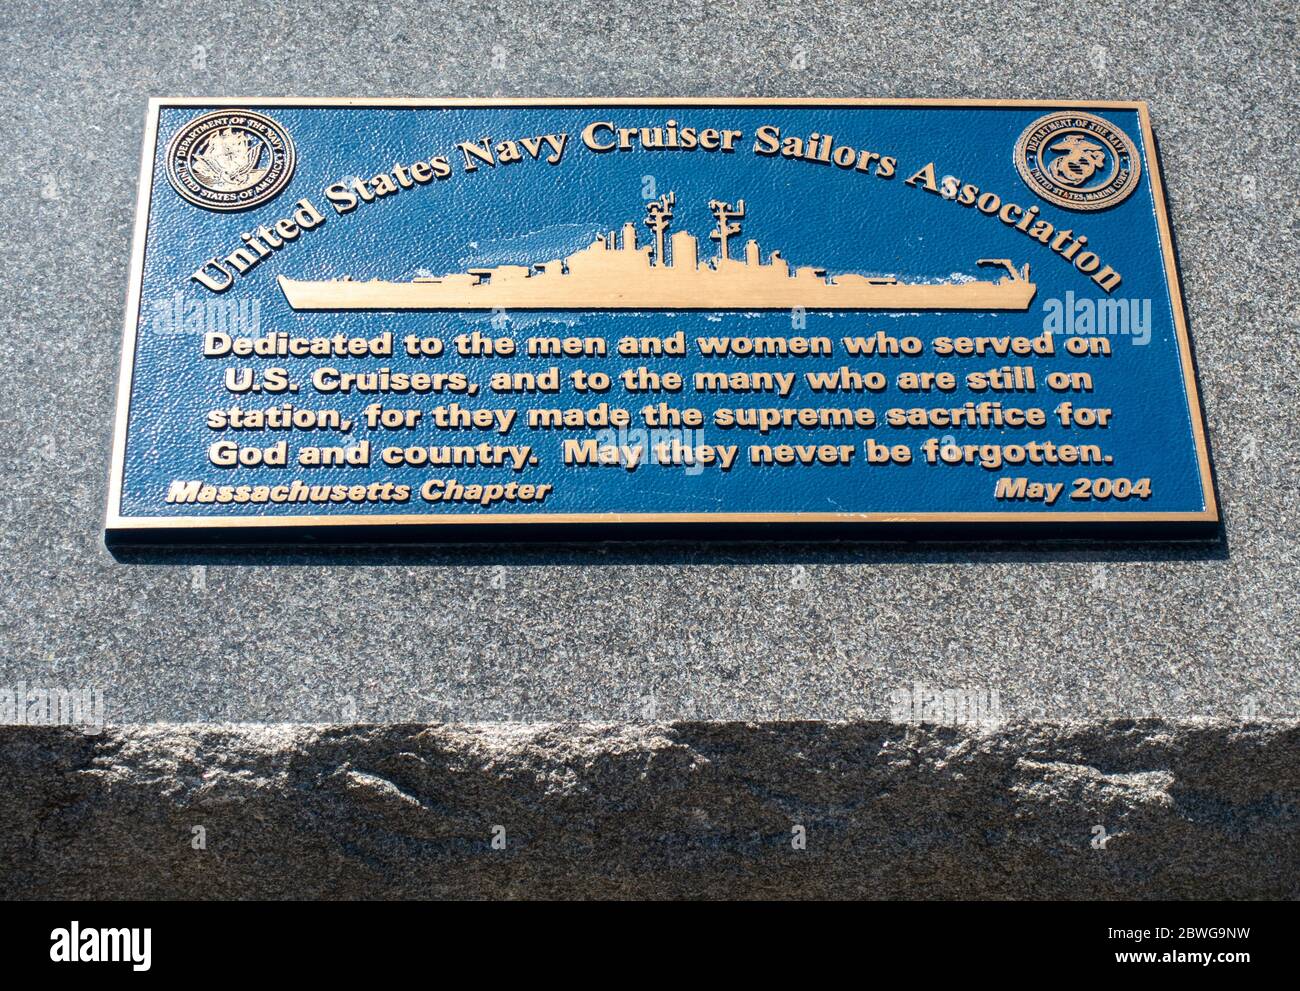 Targa sul Granite Memorial per l'Associazione dei marinai incrociatori della Marina degli Stati Uniti dedicata agli uomini e alle donne che hanno servito sui Cruisers. Foto Stock